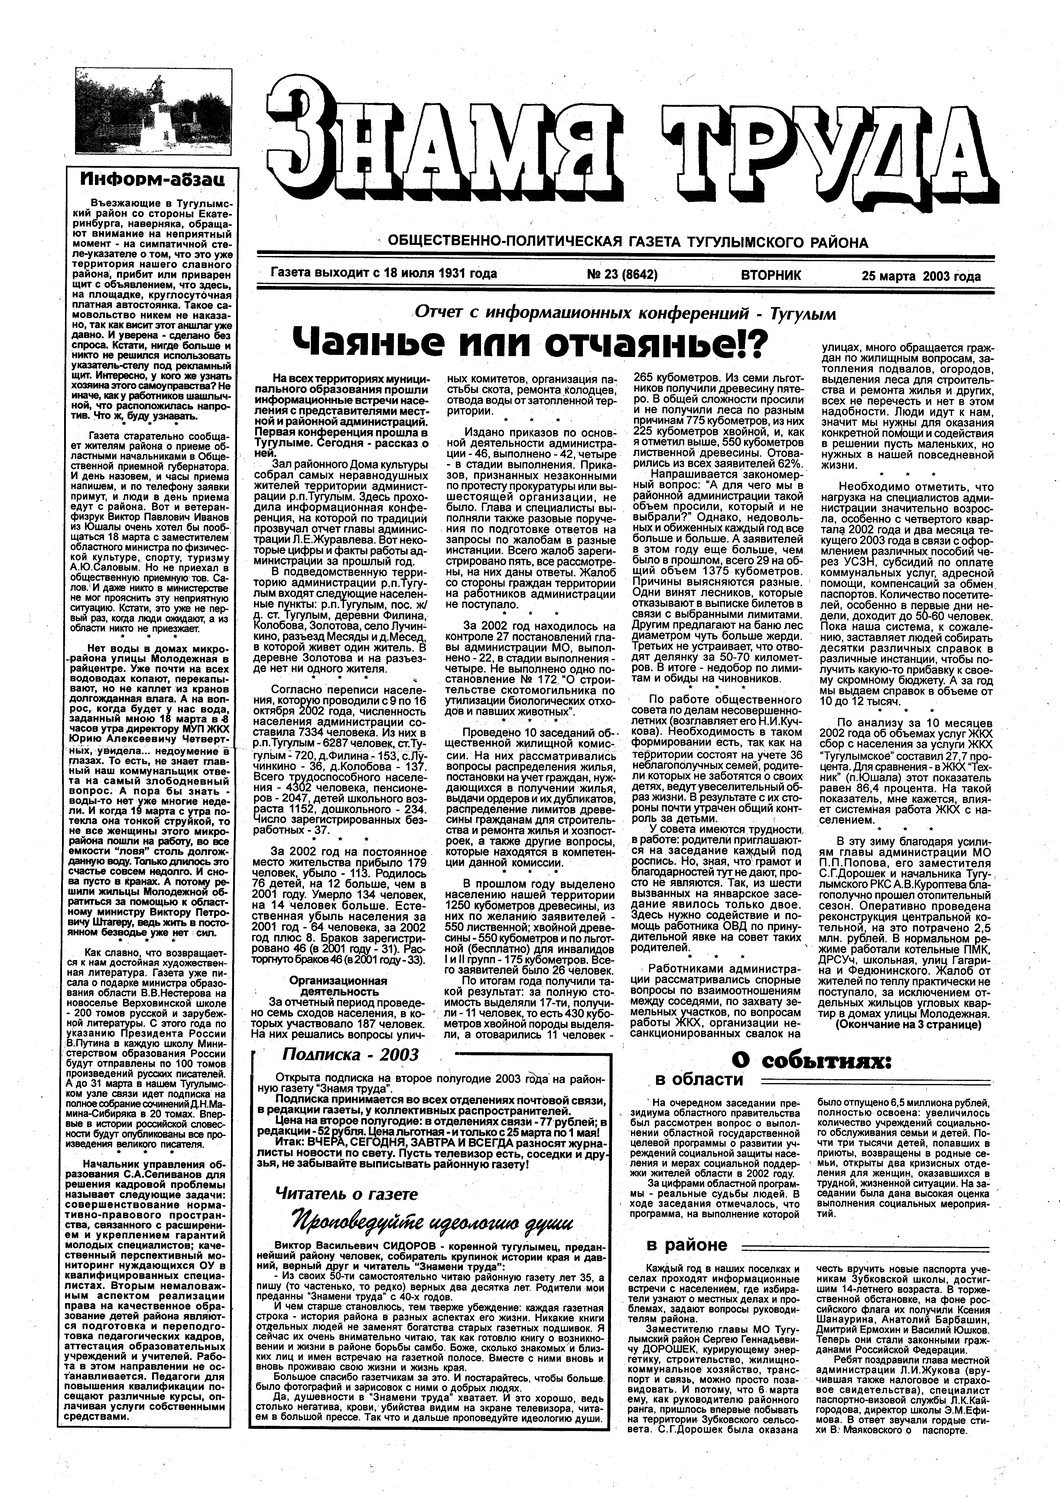 Знамя труда №23 от 25 марта 2003г.